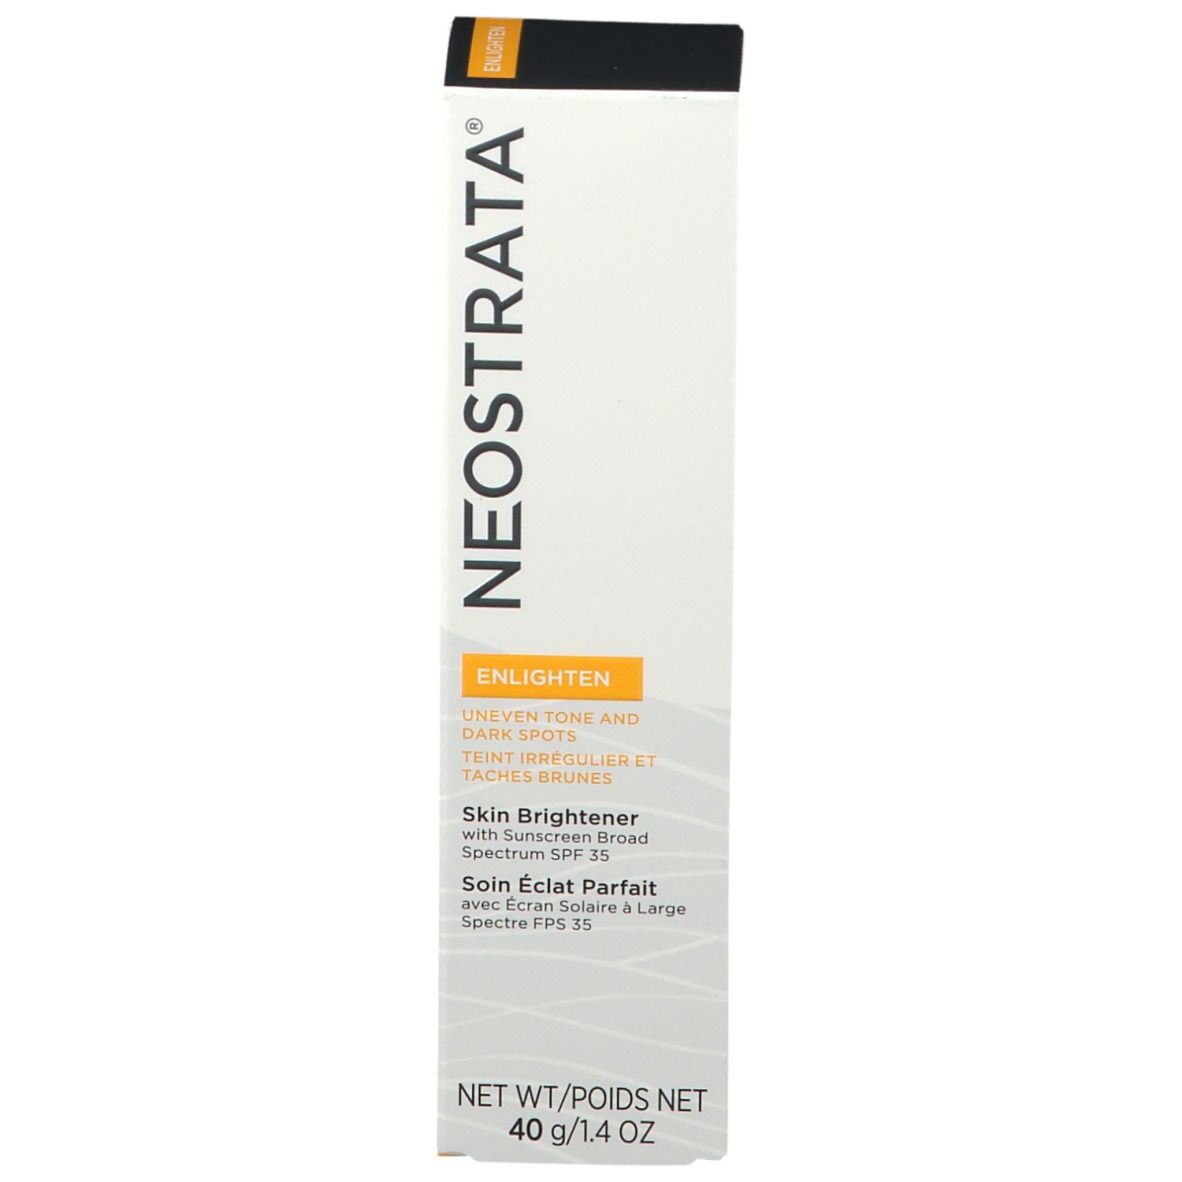 NeoStrata® Enlighten Skin Brightener SPF 35